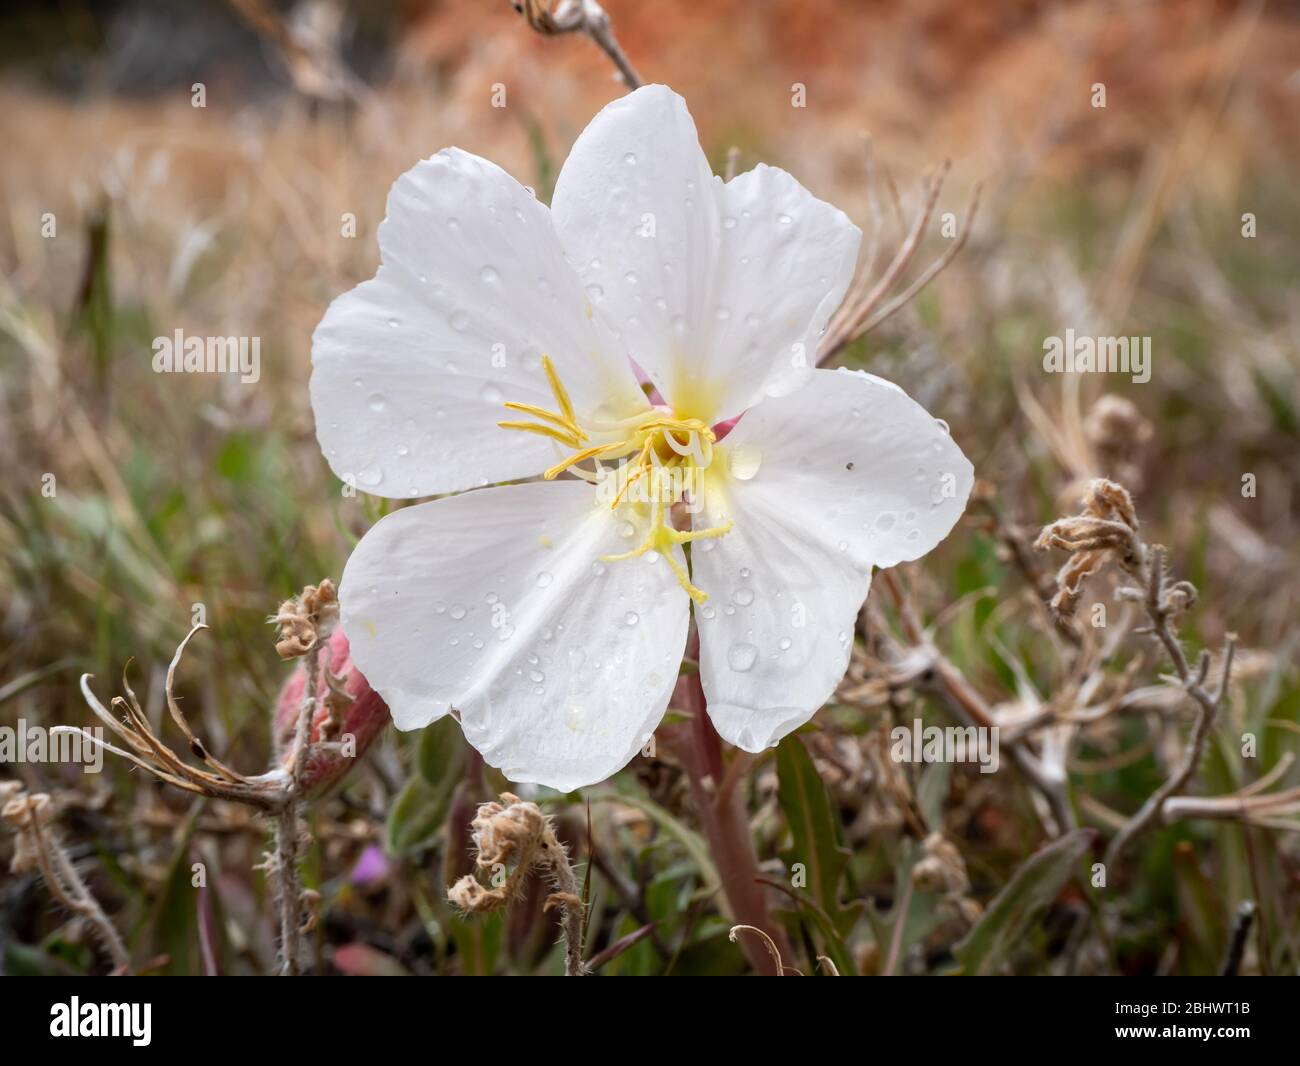 Delicato fiore bianco di prismrose con gocce di pioggia Foto Stock